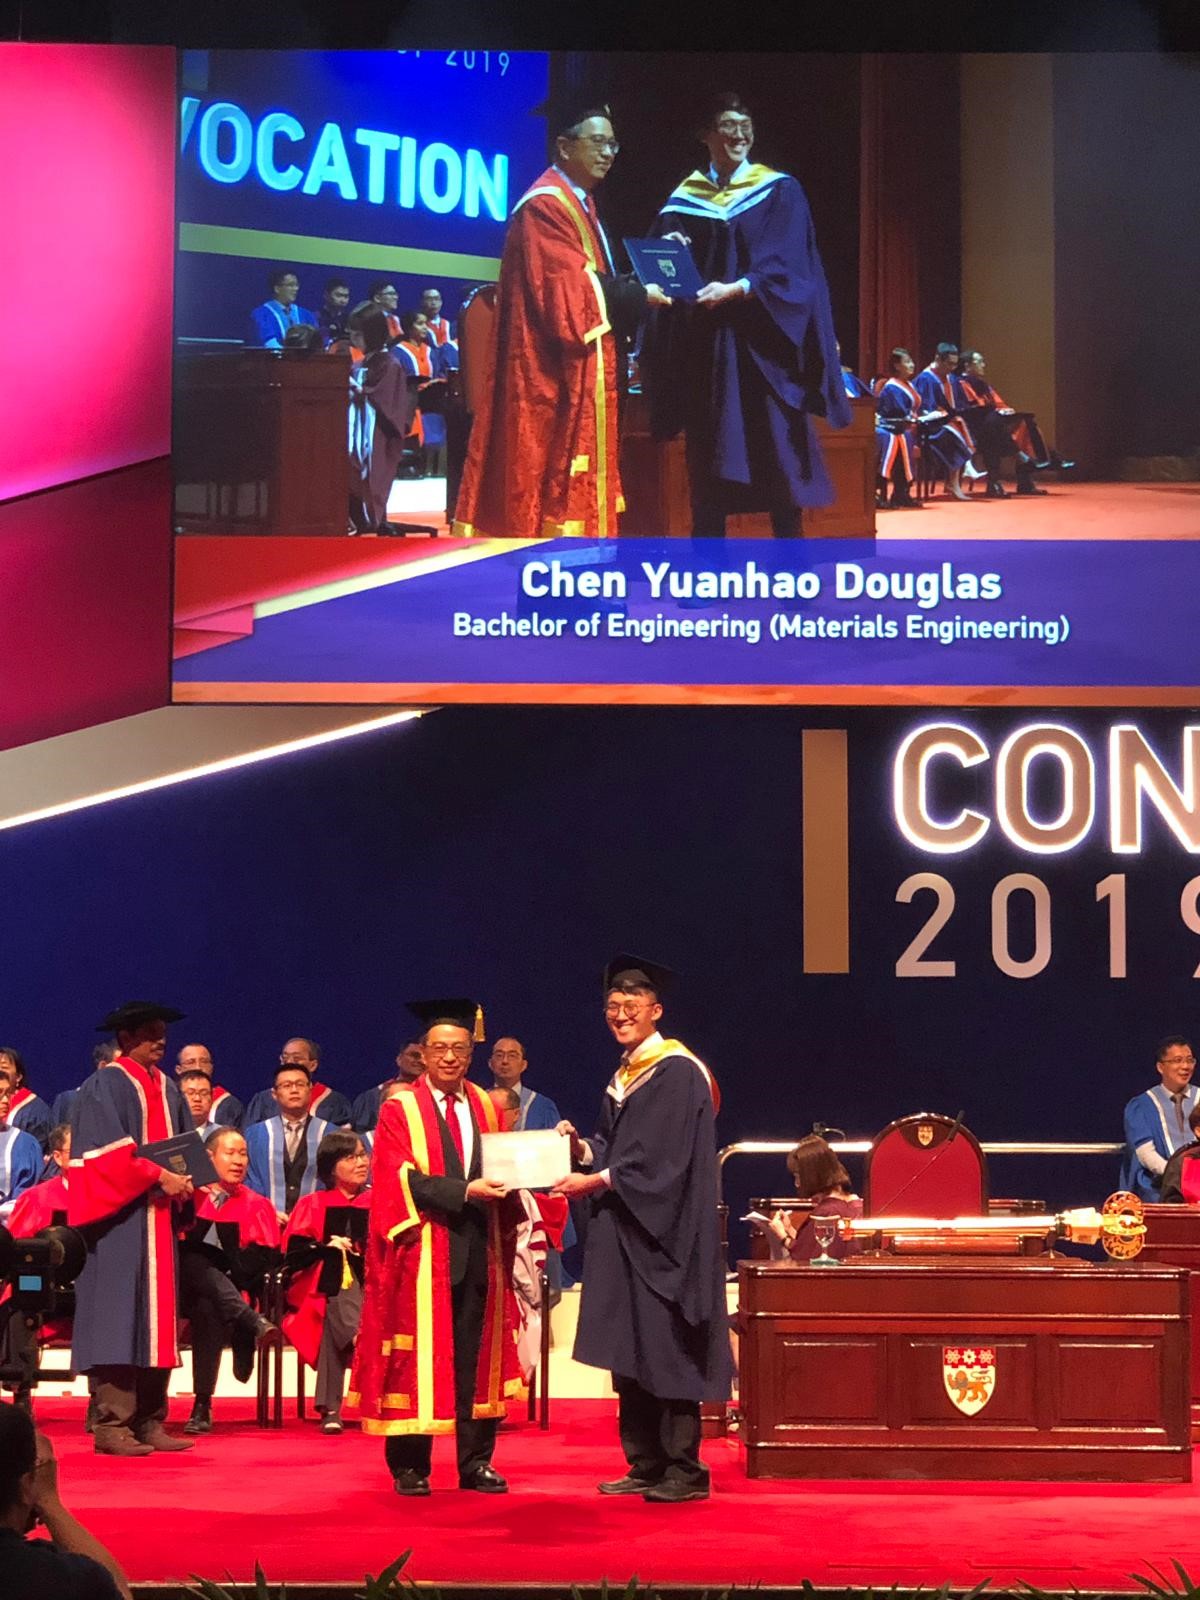 DEB alumnus, Chen Yuanhao Douglas